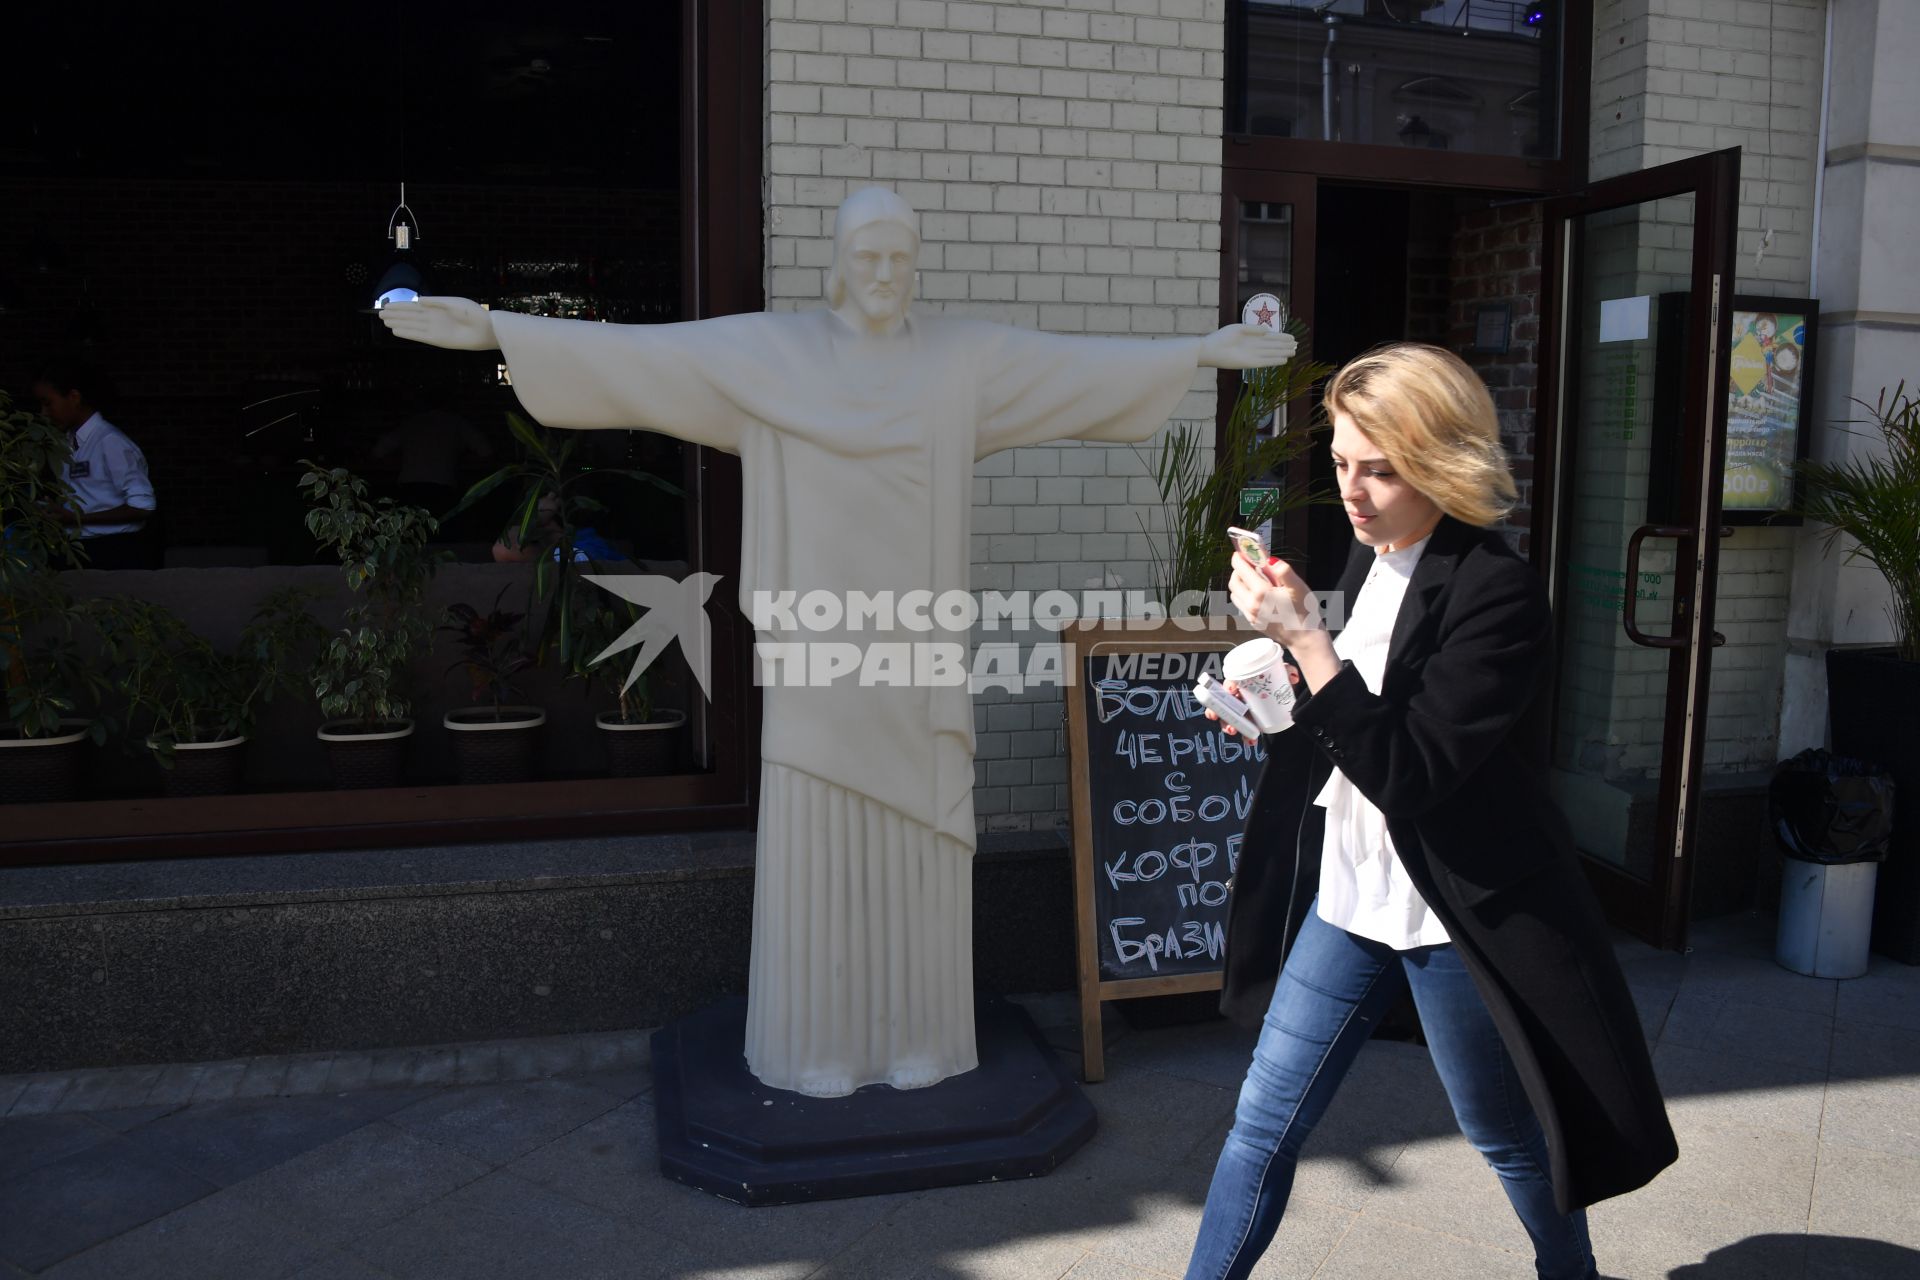 Москва. Уменьшенная копия статуи Христа-Искупителя возле кафе в Москве.